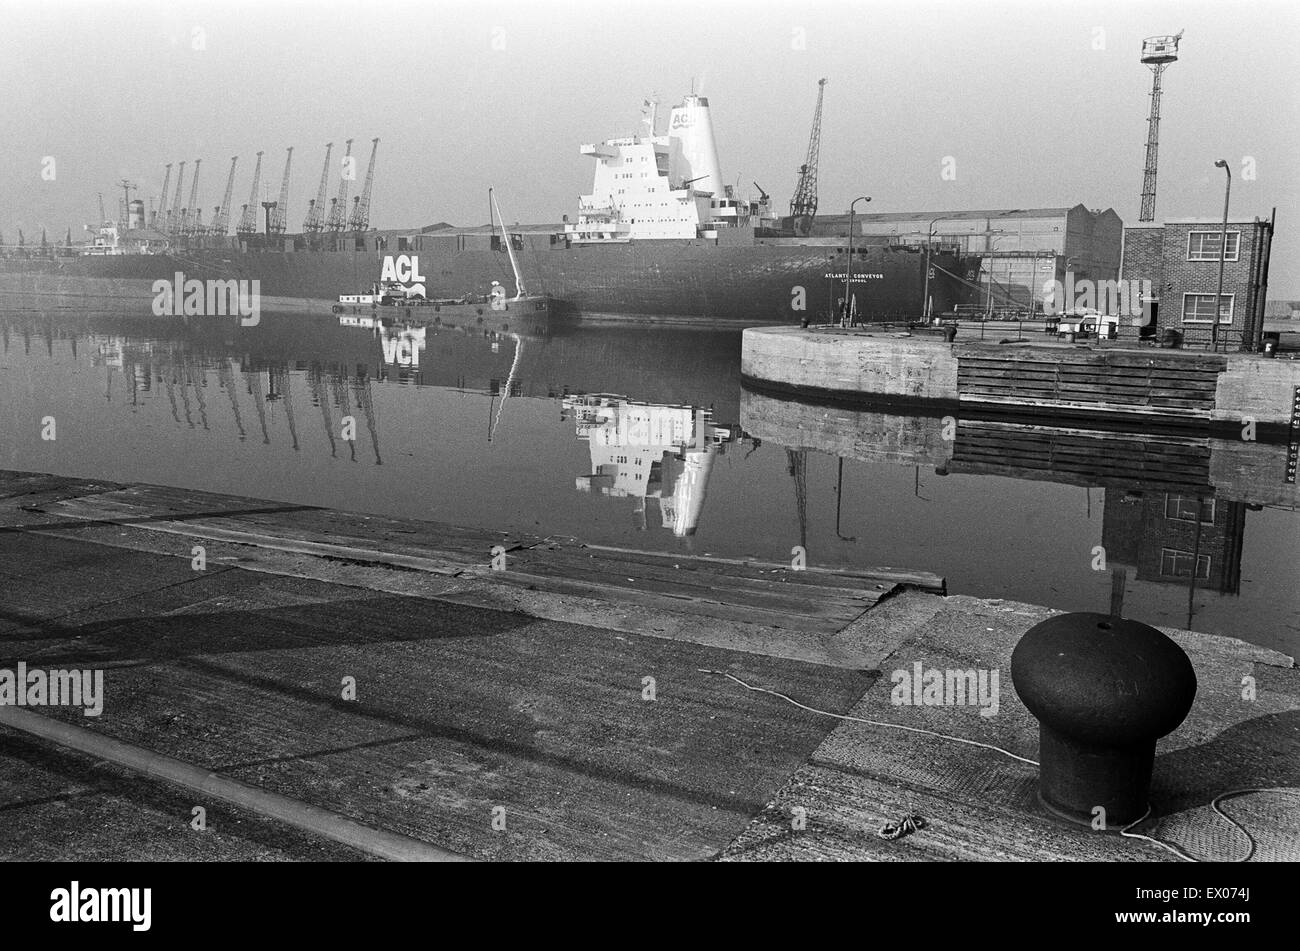 Le convoyeur de l'Atlantique, un navire de la marine marchande britannique, qui a été réquisitionné pendant la guerre des Malouines. Elle a été frappé le 25 mai 1982 par deux air-Argentine AM39 Exocet, tuant 12 marins. Liverpool, Merseyside, 14 avril 1982. Banque D'Images